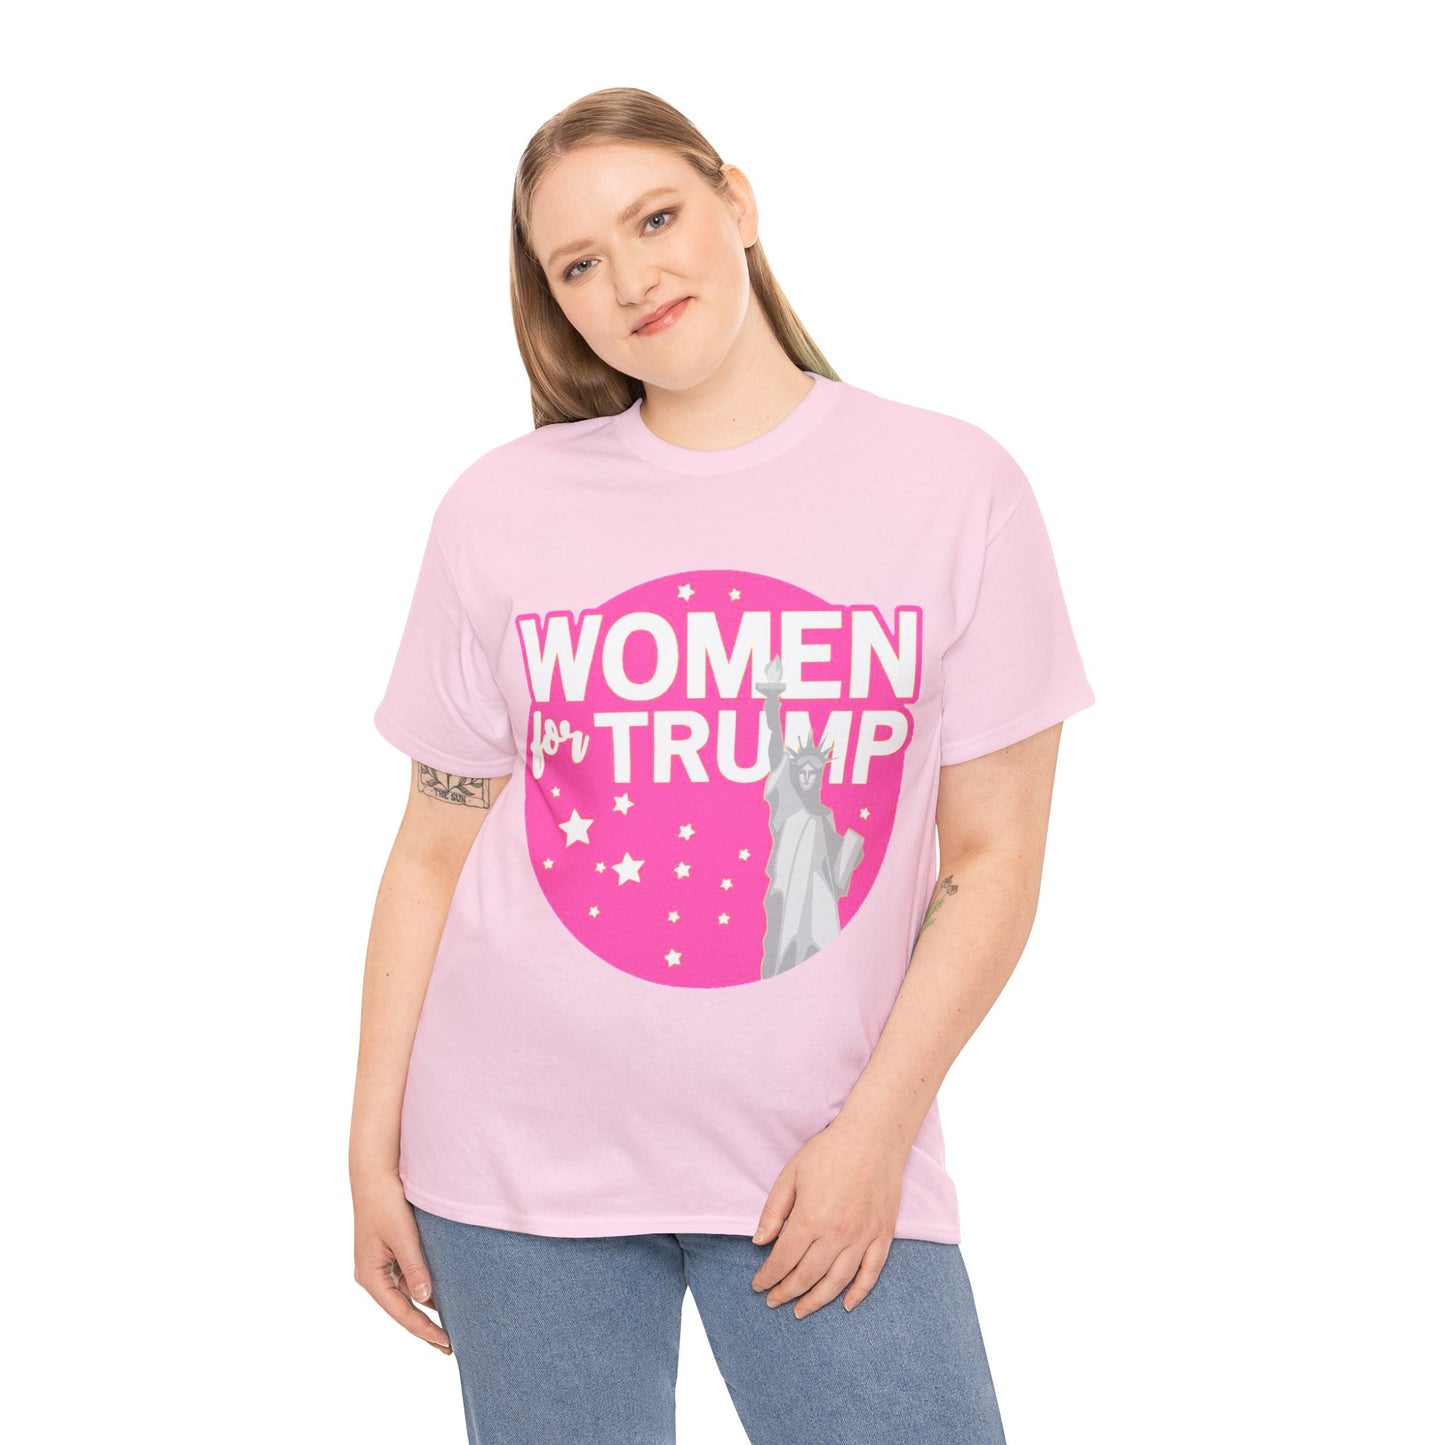 Women for Trump Shirt